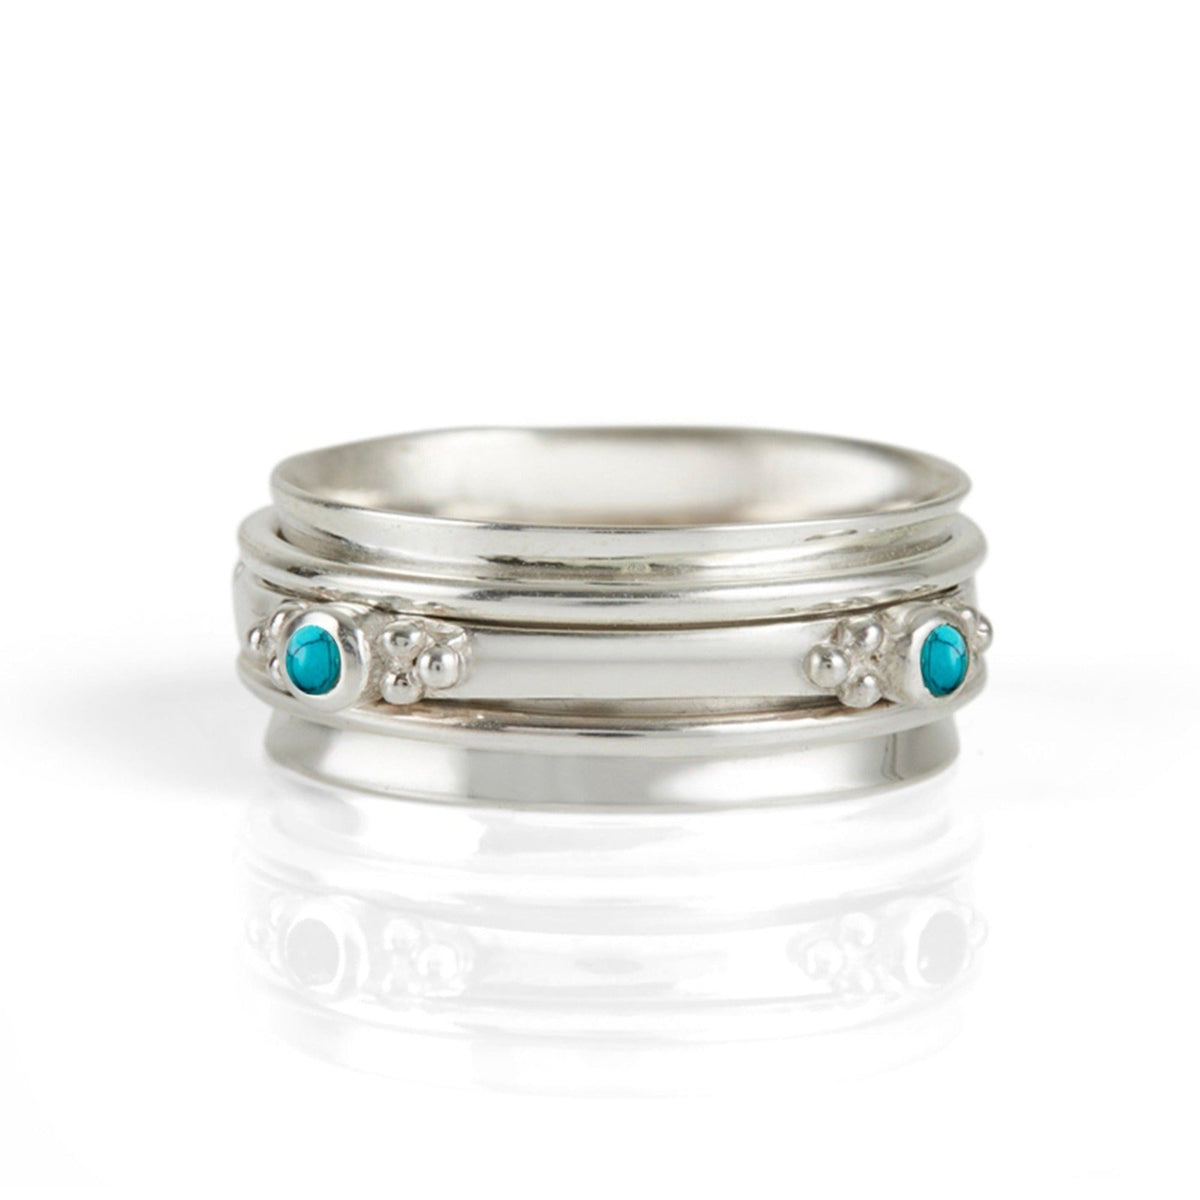 Rajalita Love Spinning Ring - Turquoise